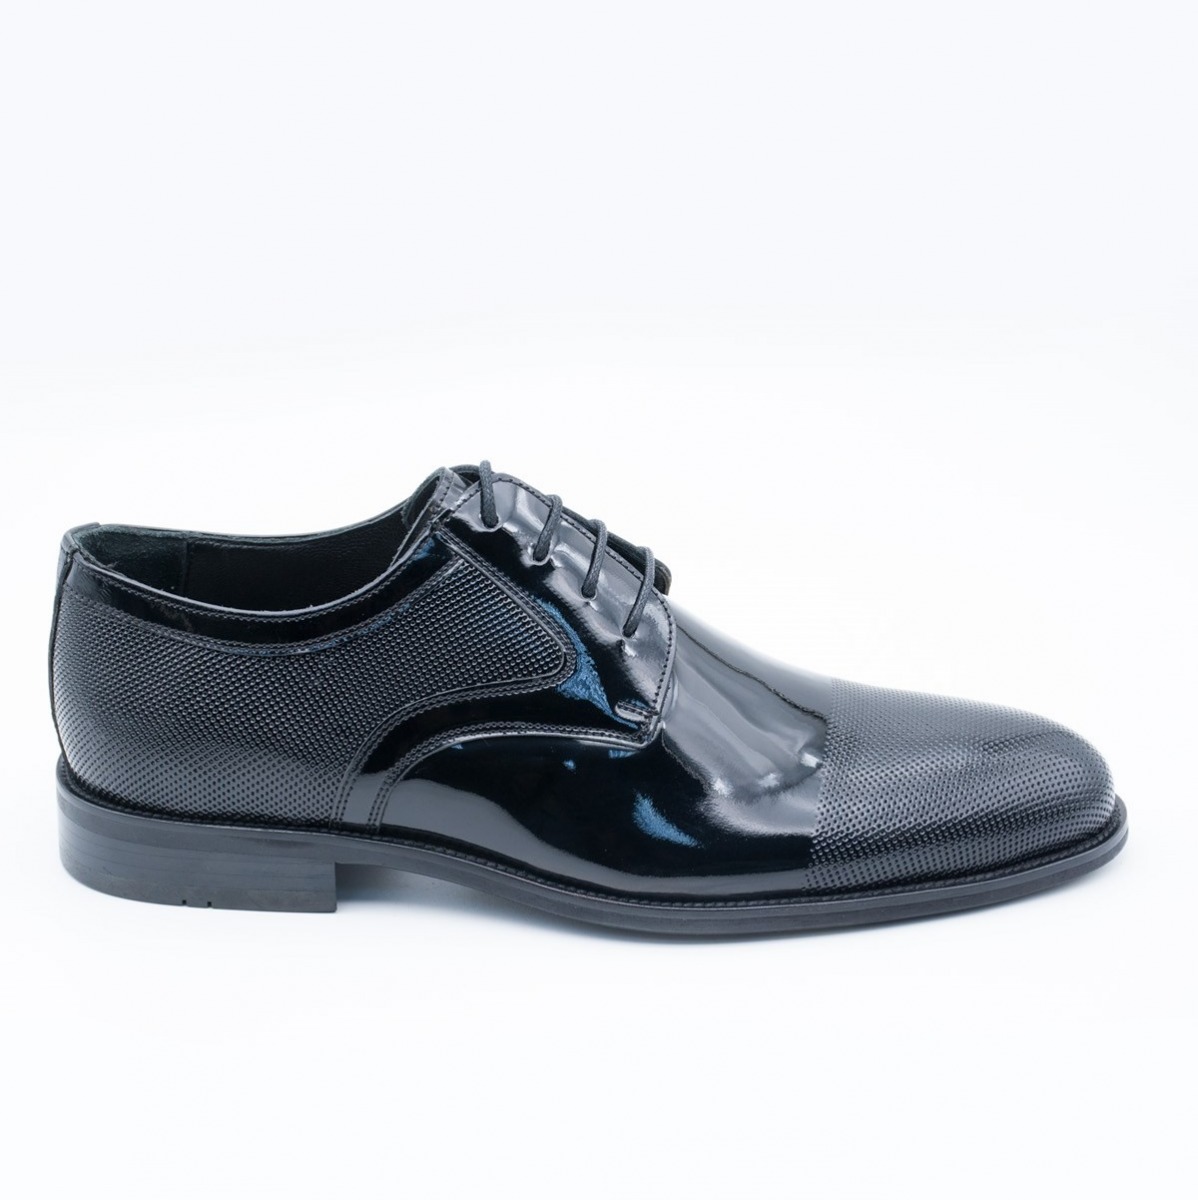 Flo Erkek Deri Klasik Ayakkabı İ19523-1 M 1000 SİYAH RUGAN. 1